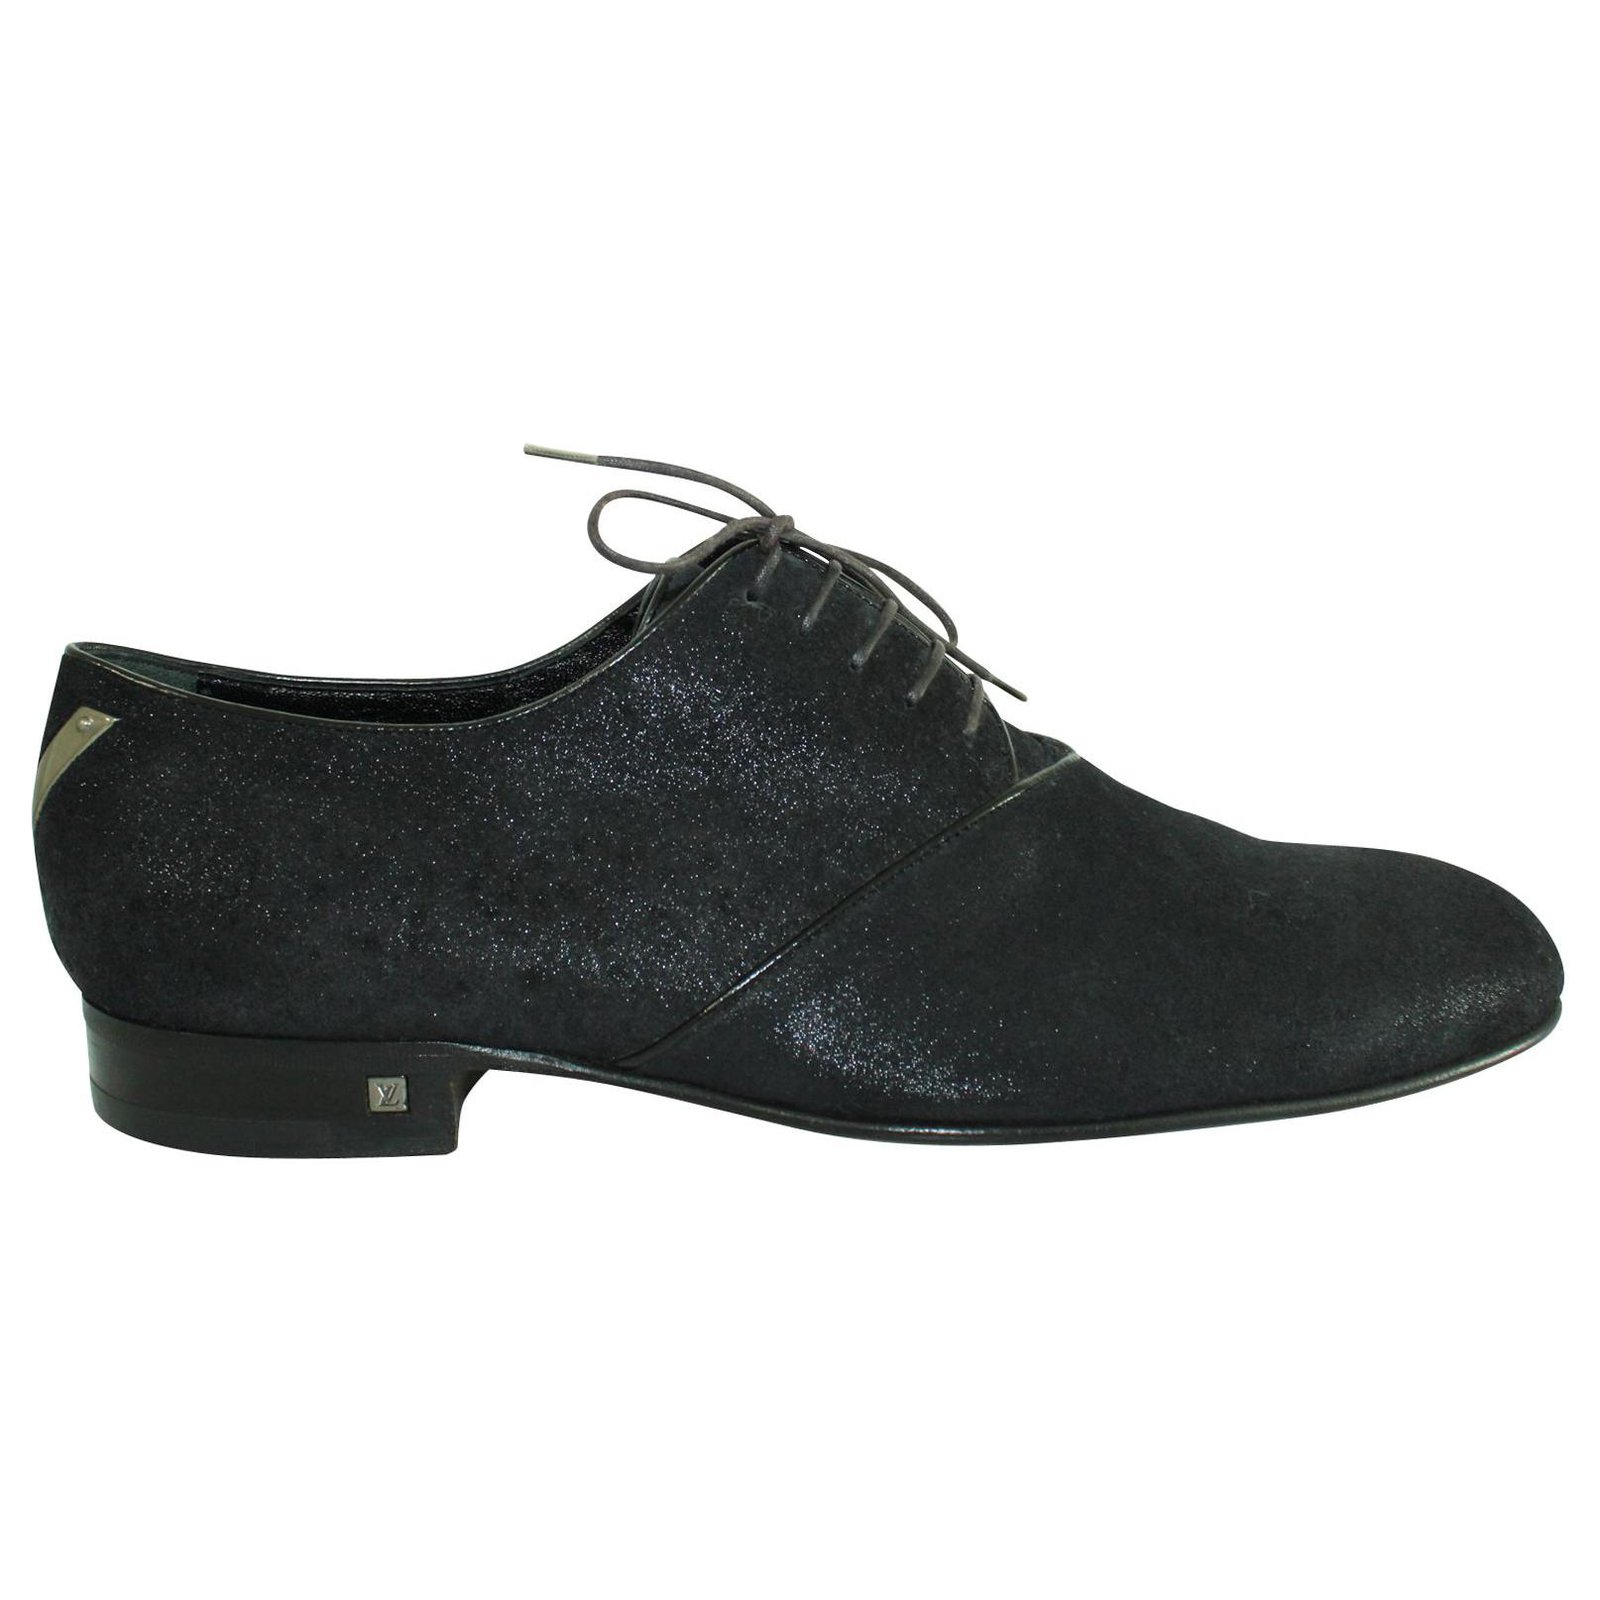 Zapatos Louis Vuitton en cuero negro granulado, brogue y cordones